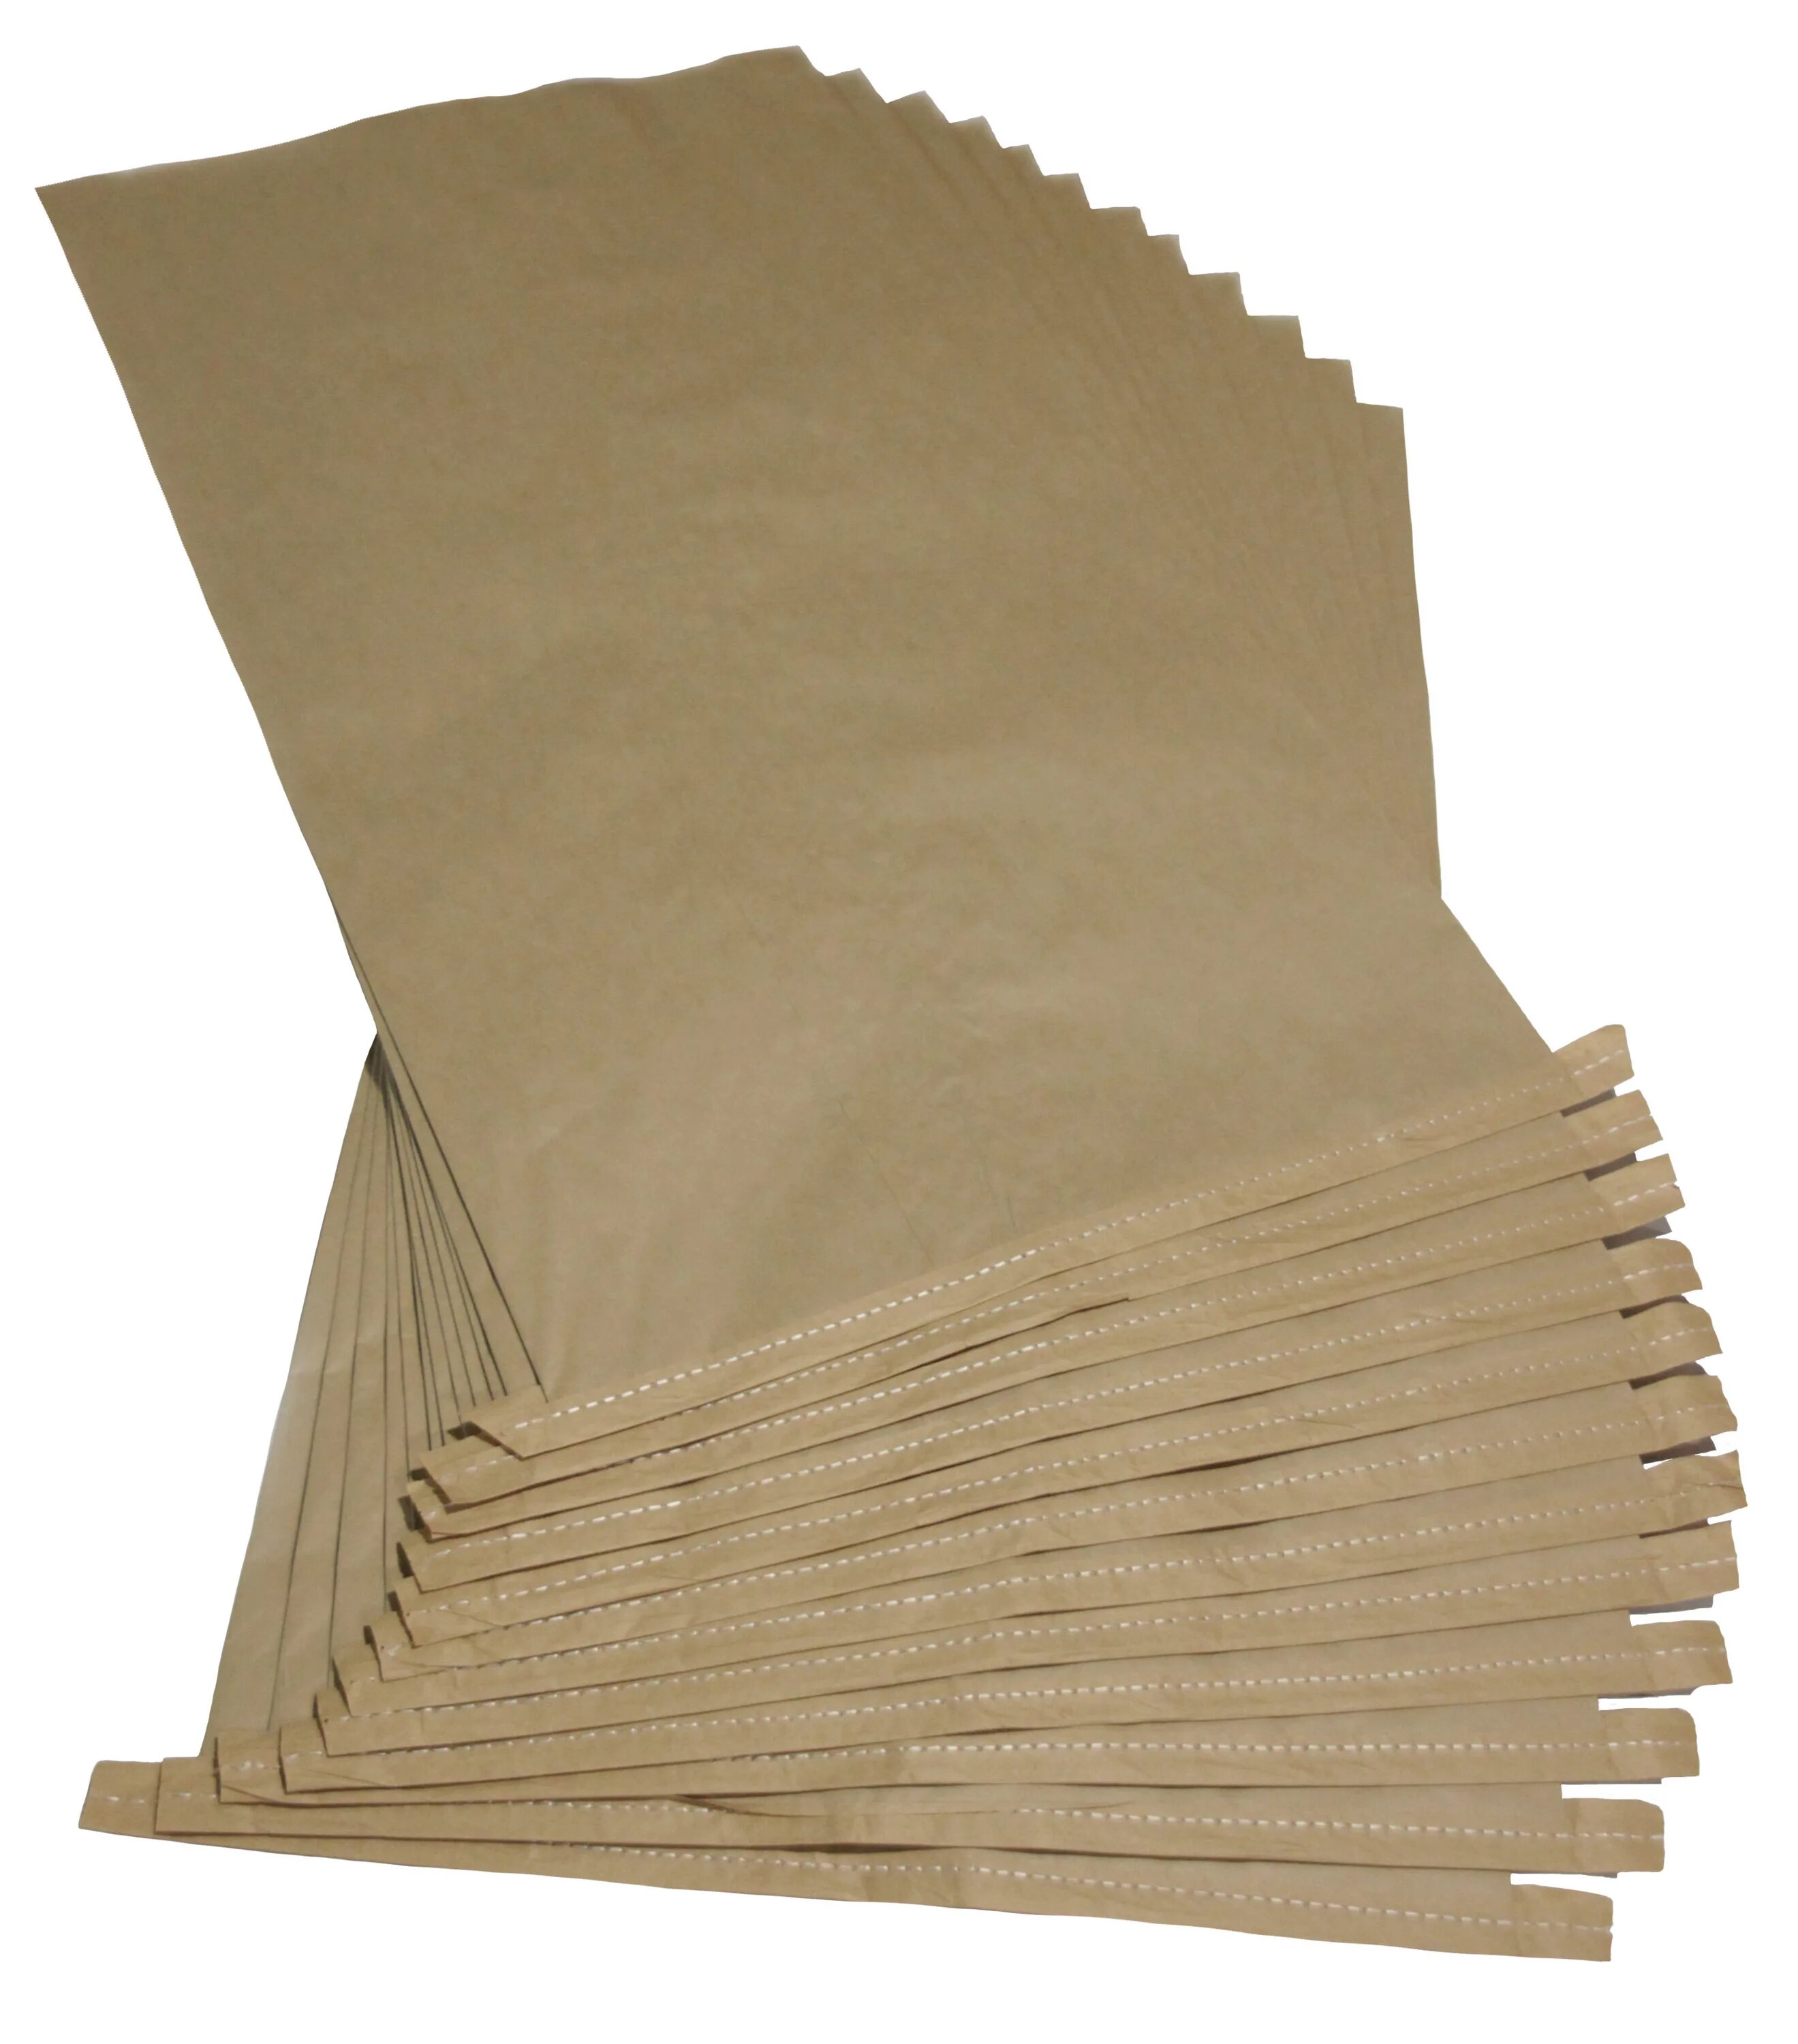 Крафт-мешок 3-х слойный 100х45 с полиэт вкладышем. Крафт мешки бумажные 3-х слойные. Многослойные бумажные мешки с полиэтиленовым вкладышем. Четырехслойный бумажный мешок. 3х слойной бумаги